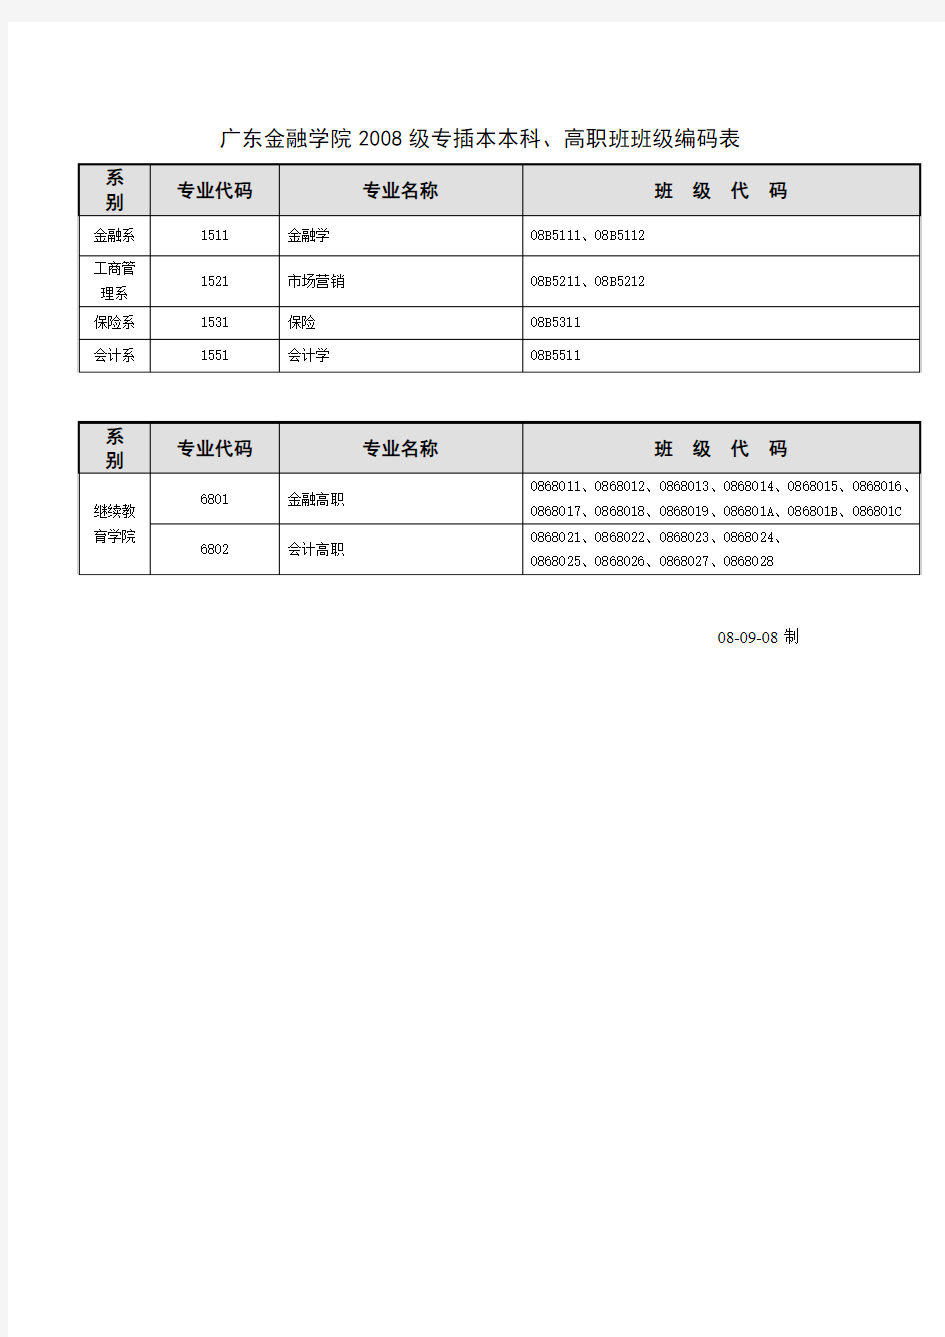 广东金融学院2008级本科班级编码表